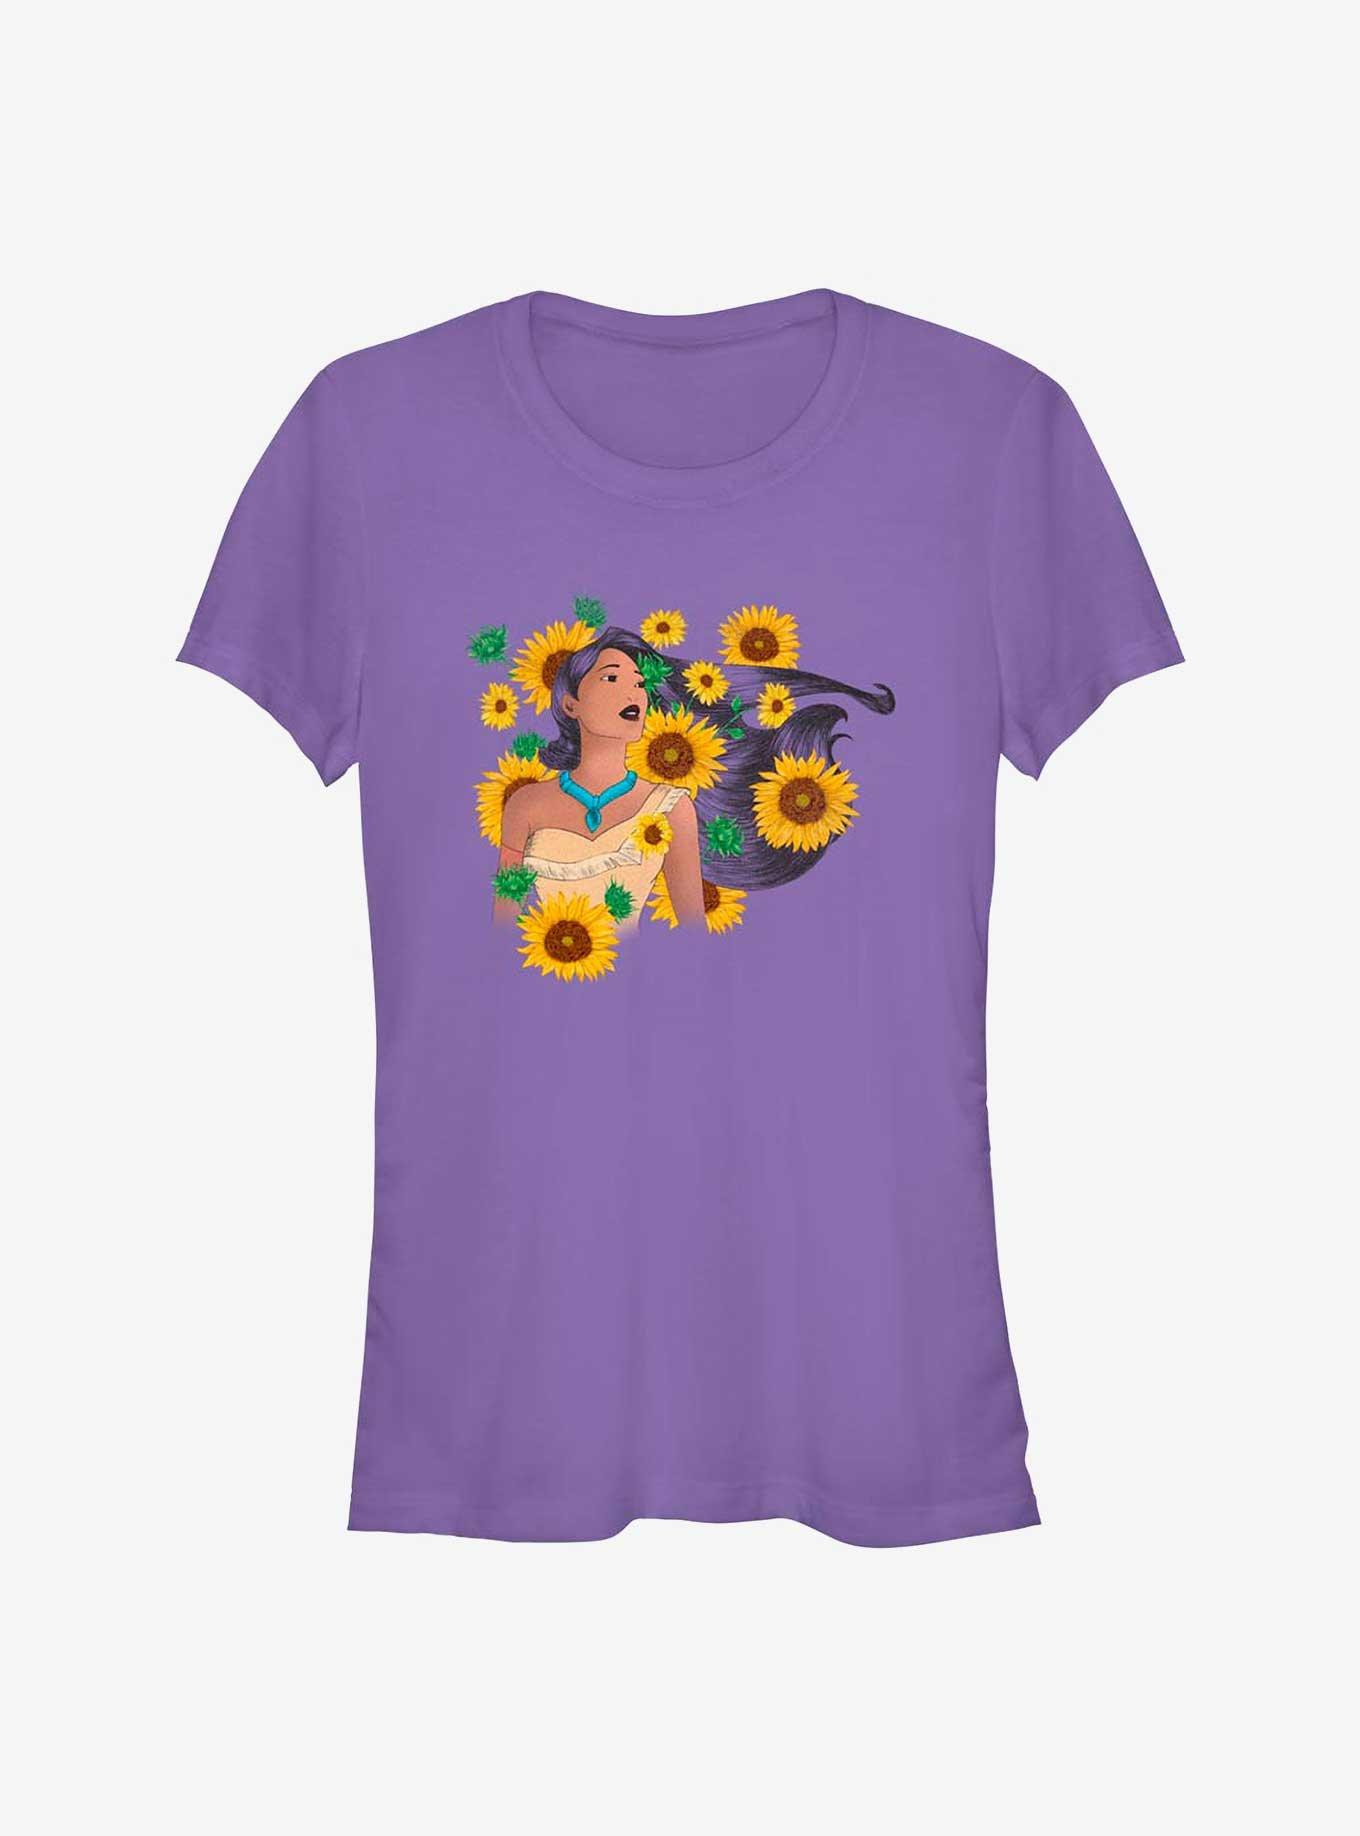 Disney Pocahontas Floral Princess Girls T-Shirt, , hi-res